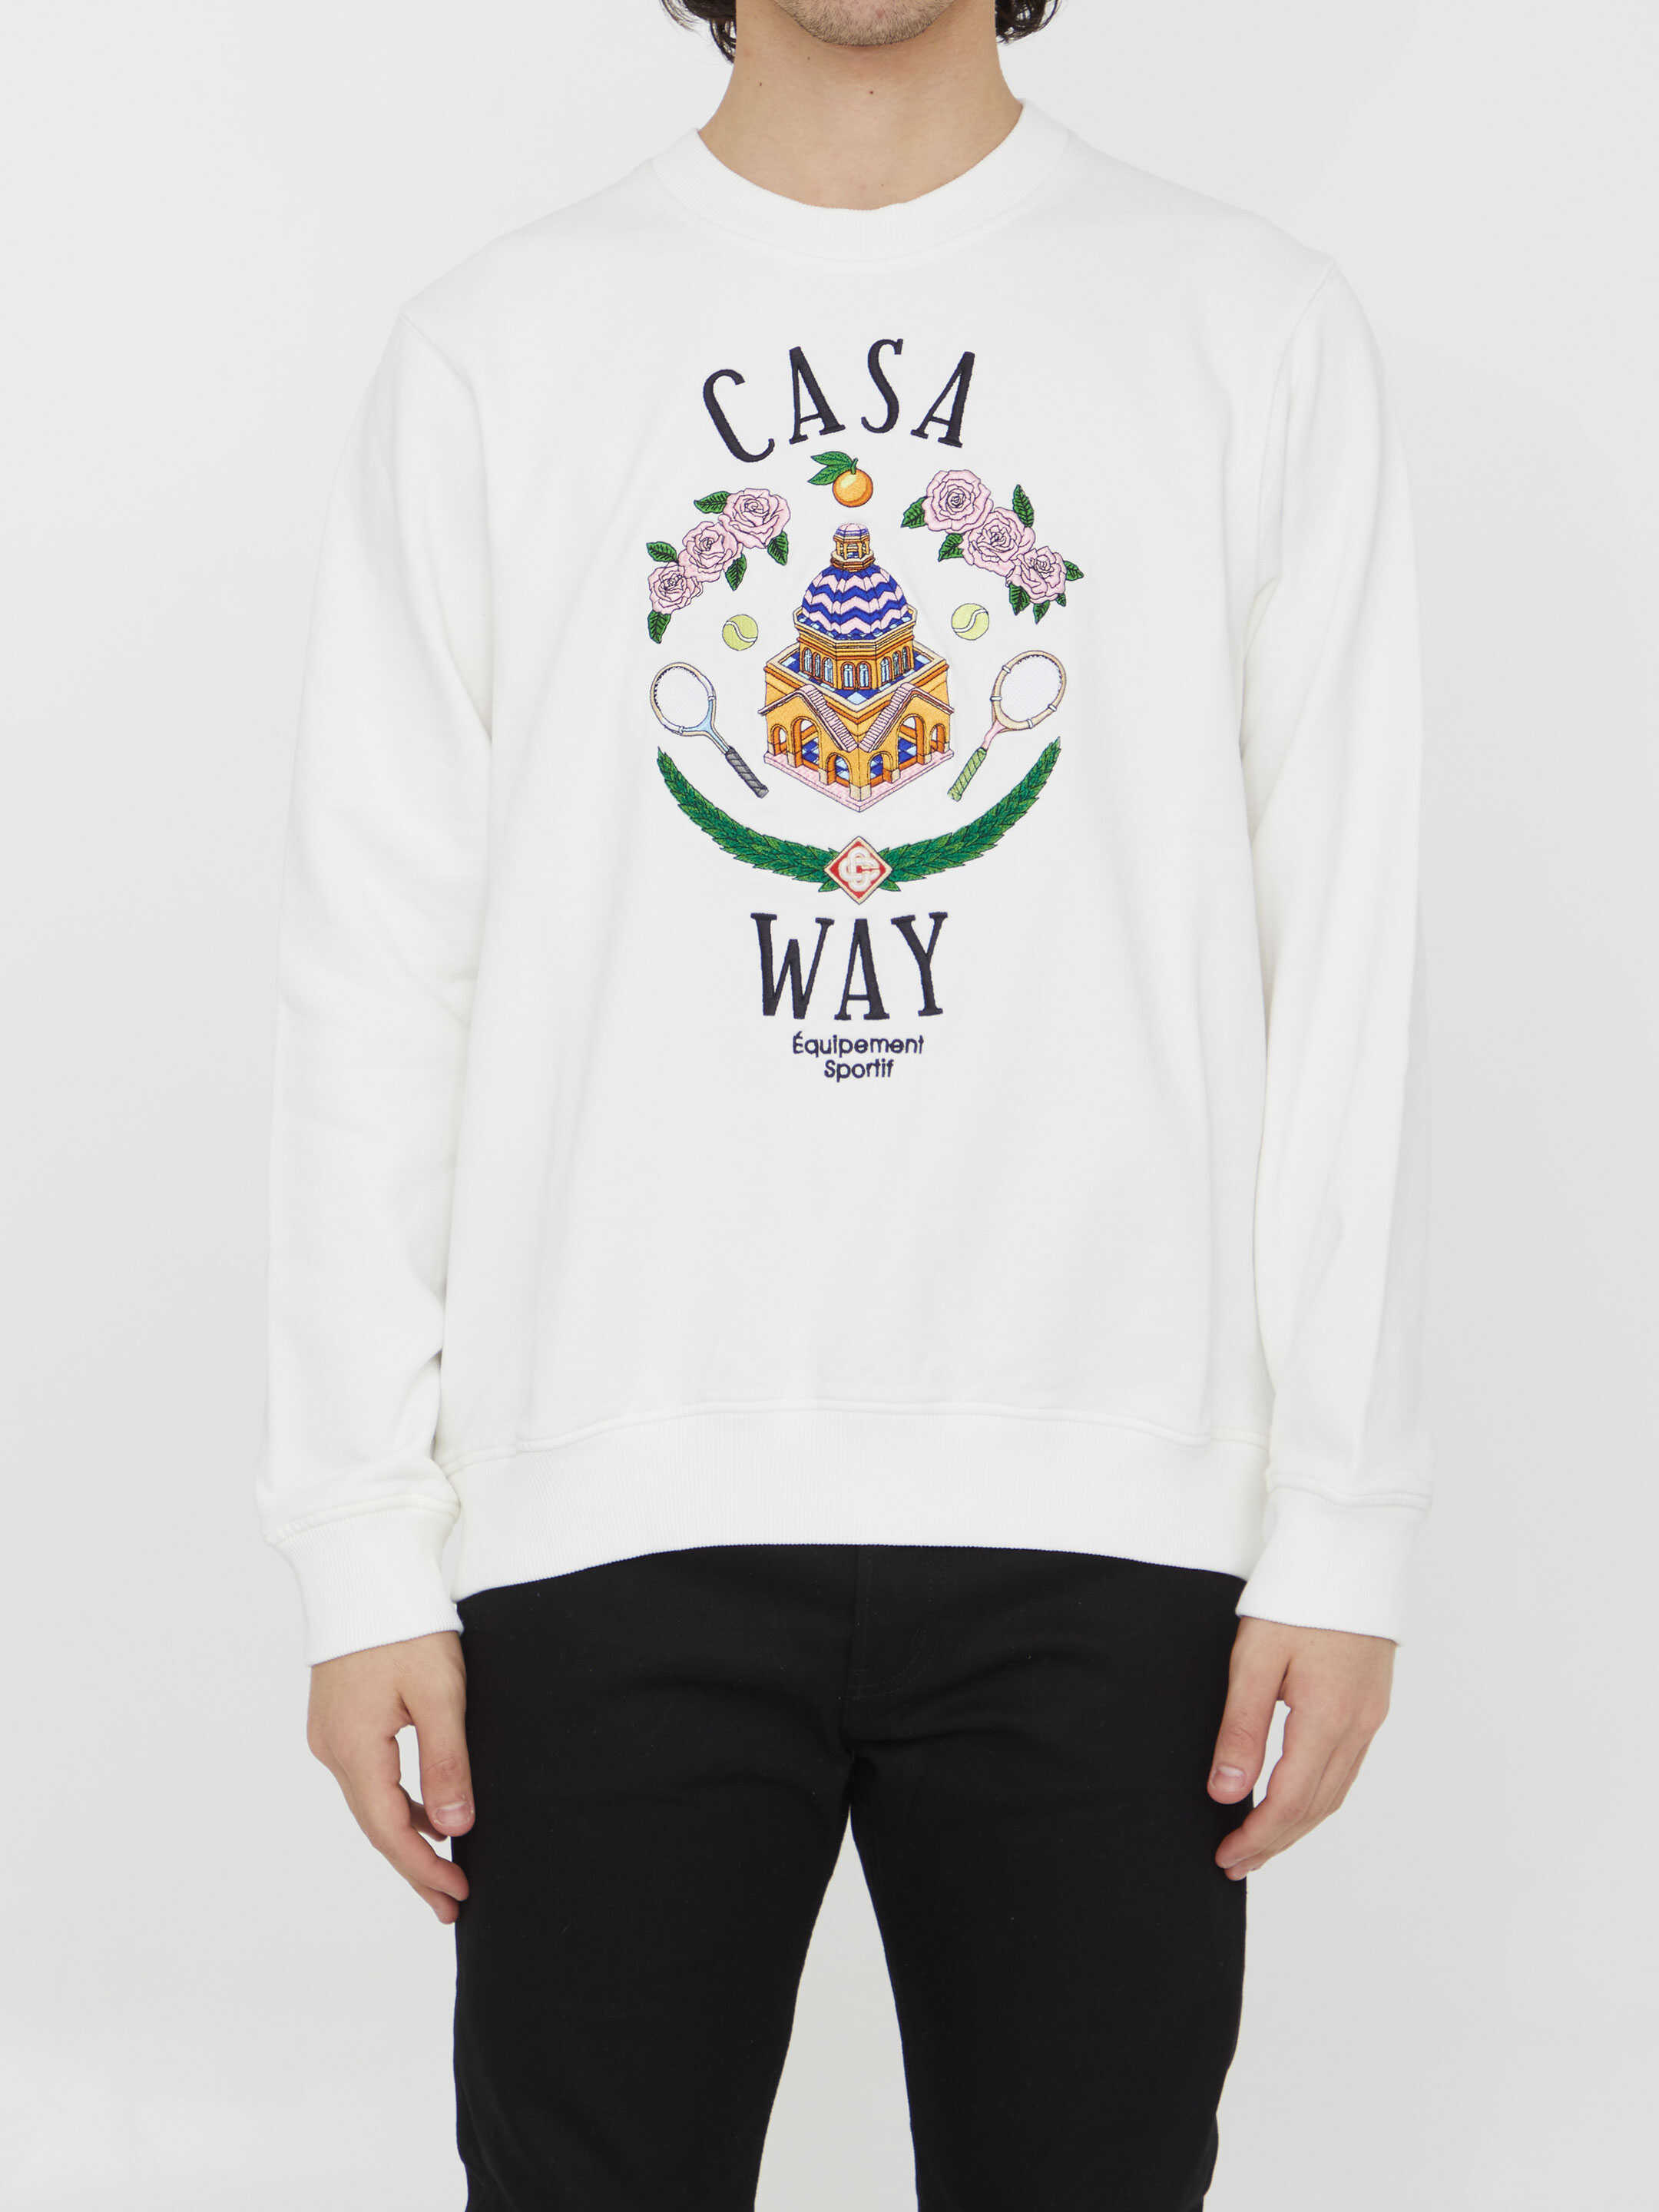 Casablanca Casa Way Sweatshirt WHITE